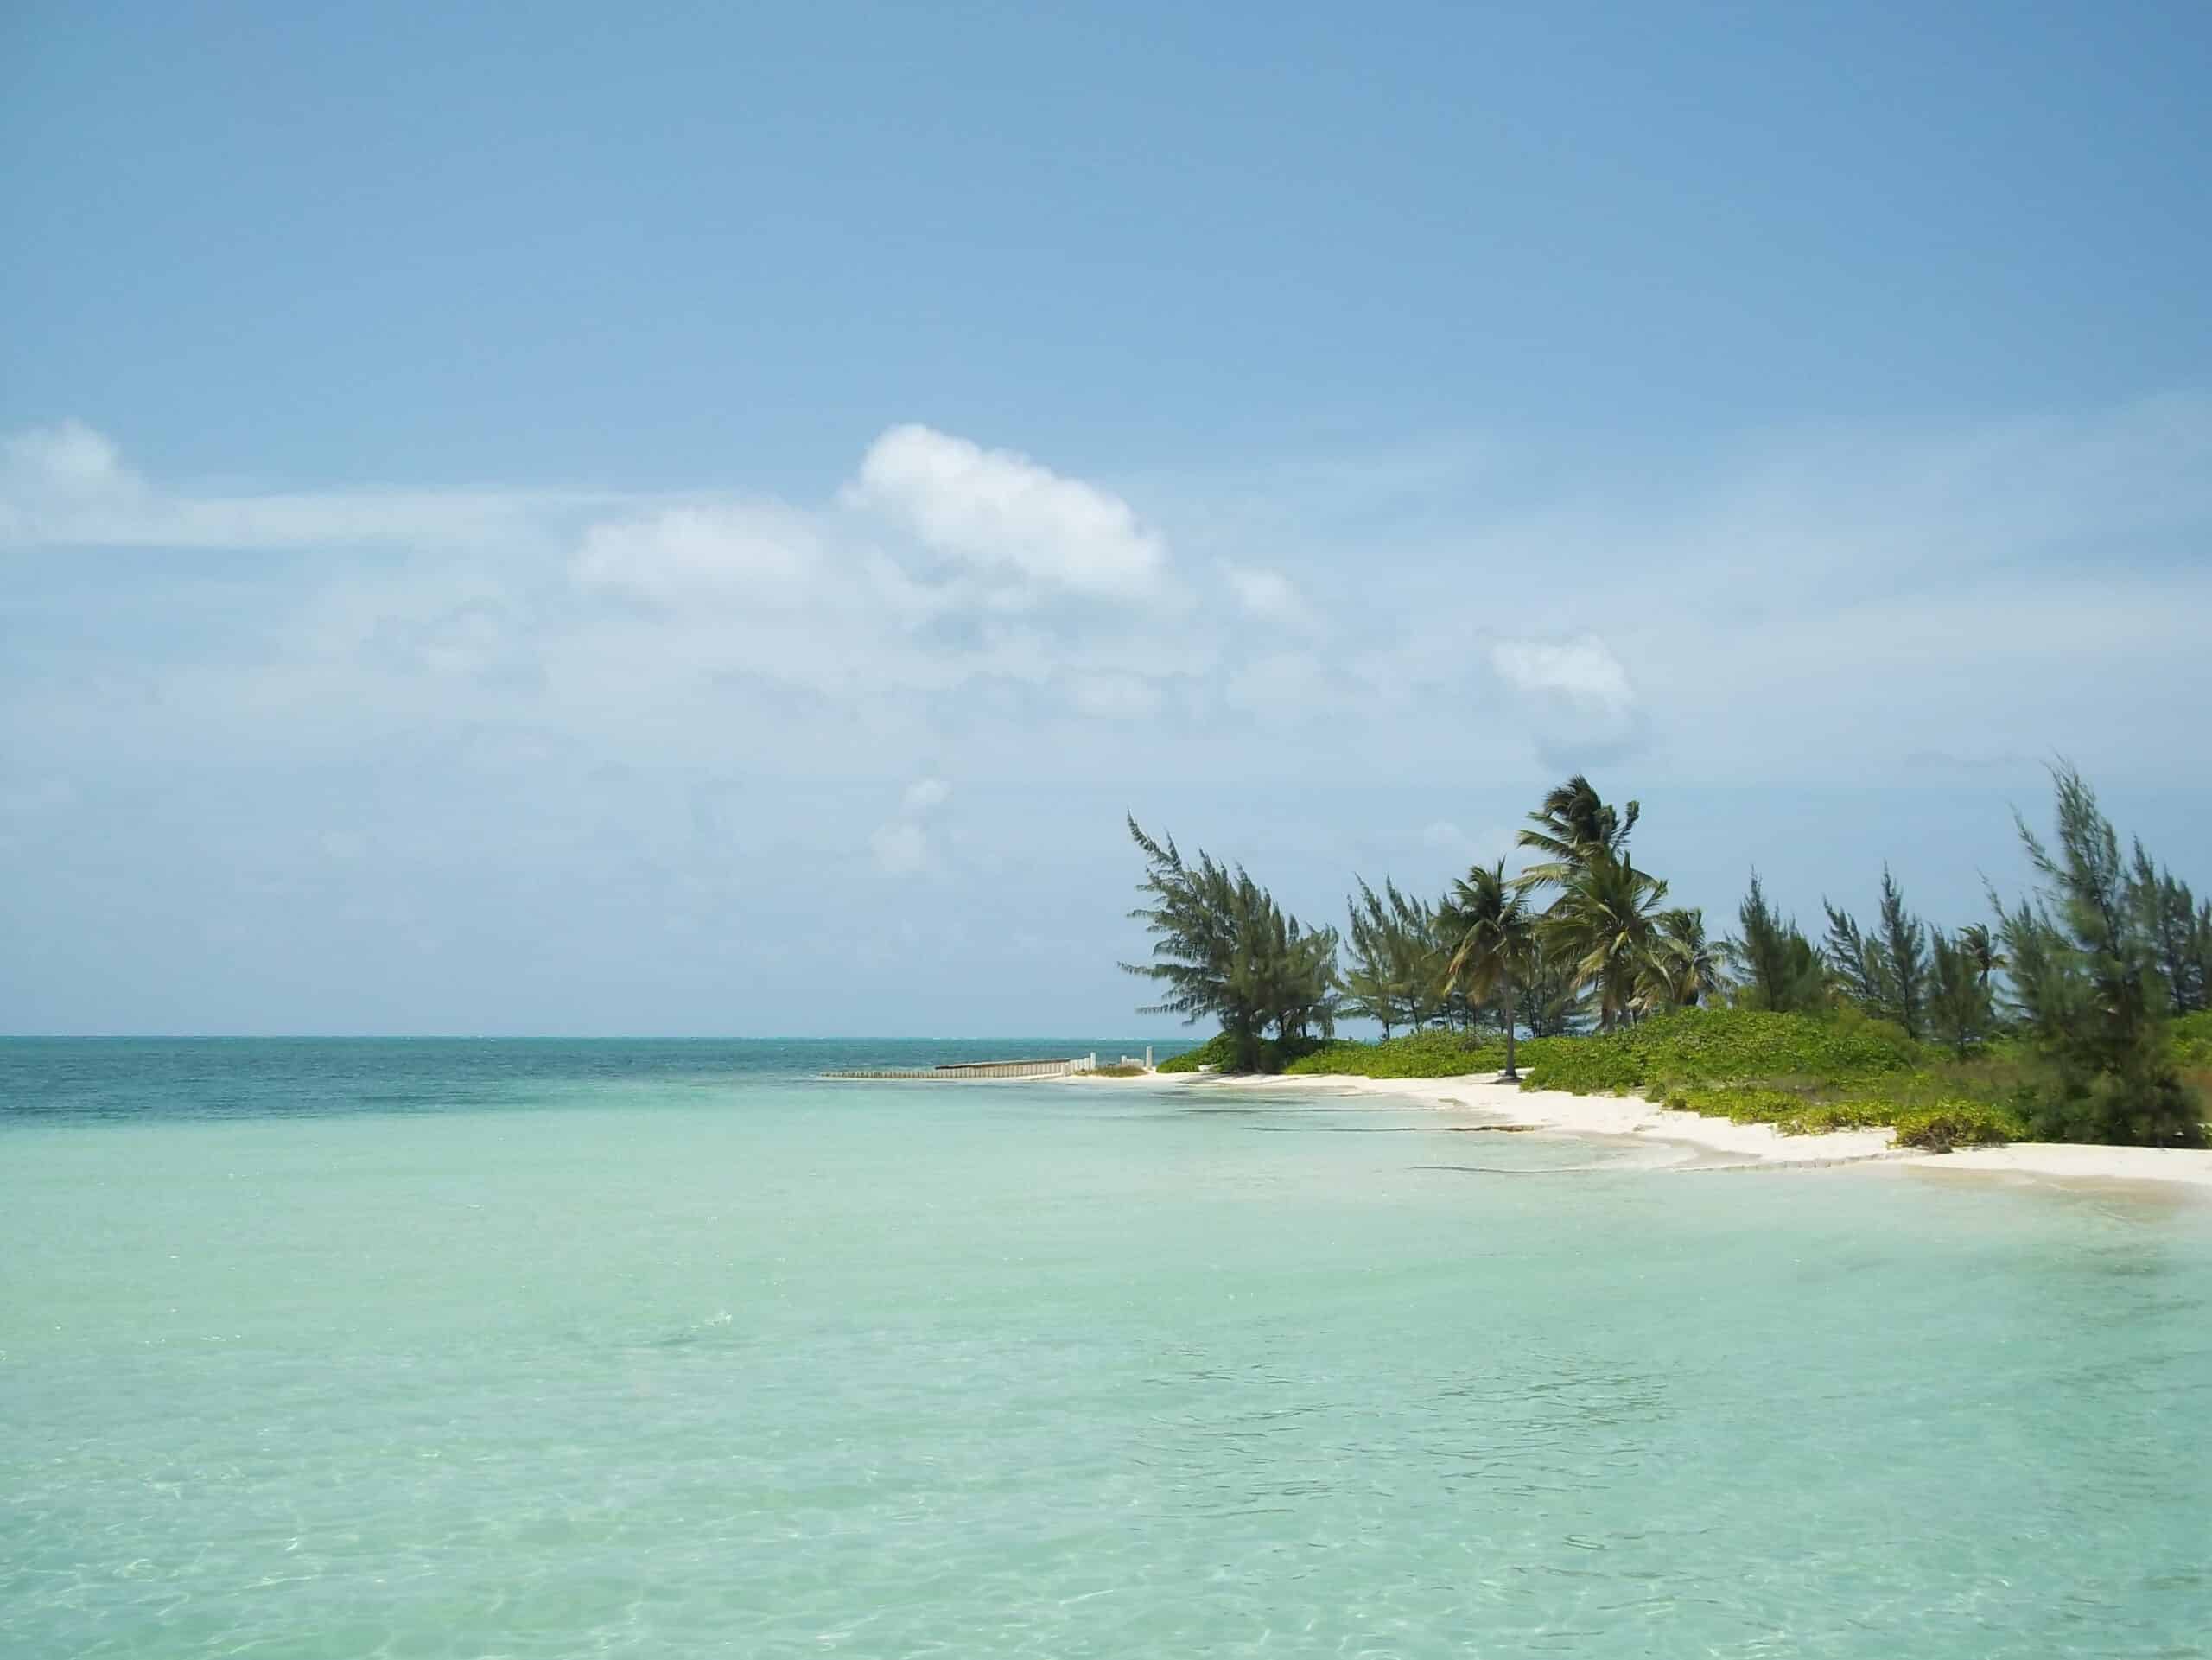 Vista da praia das Ilhas durante o dia com mar azul claro, do lado direito uma pequena parte da ilha com areias brancas e árvores.